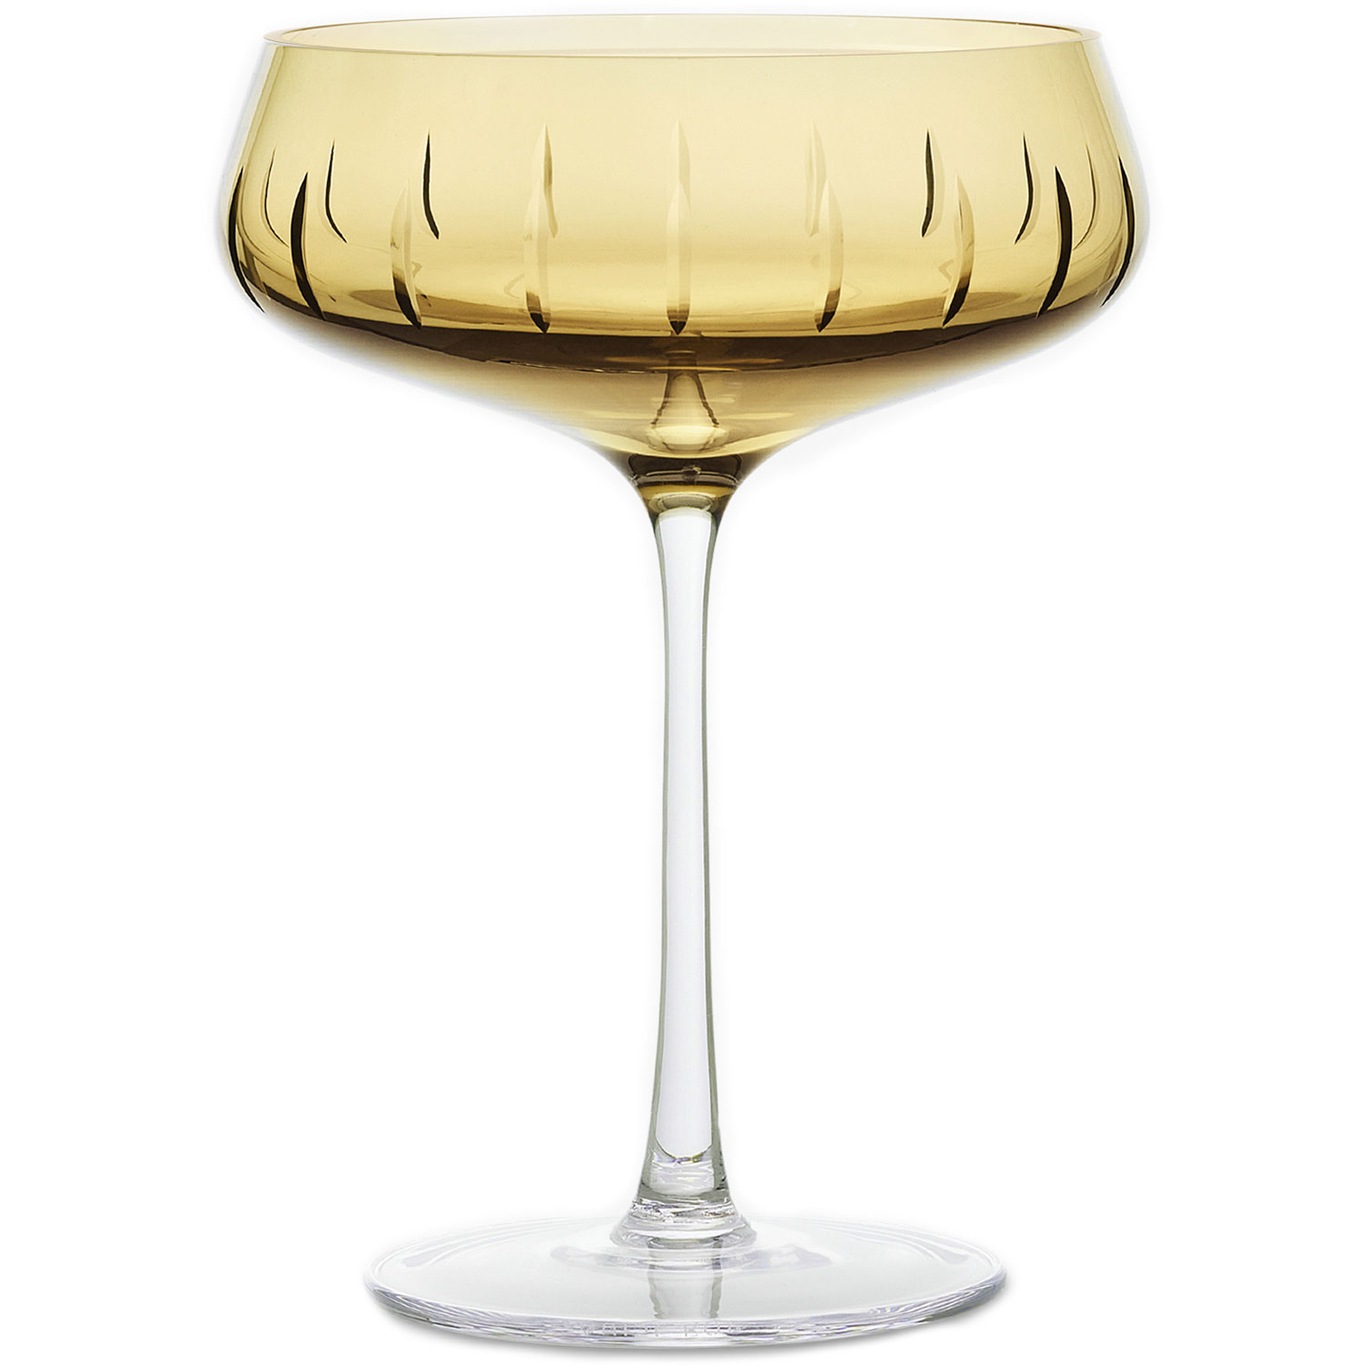 Single Cut Champagneglass, Amber